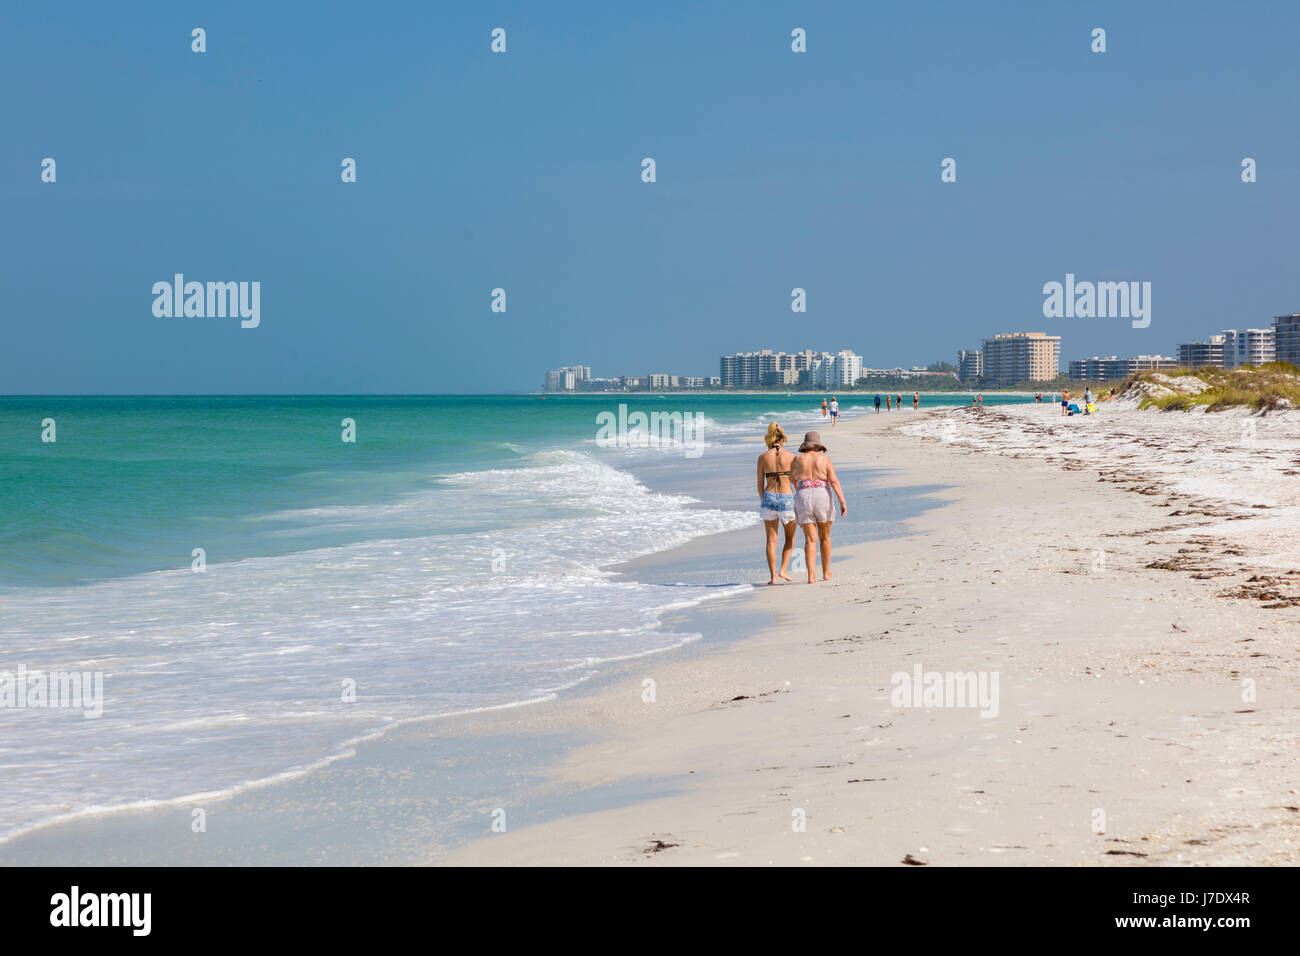 Lido-Strand am Golf von Mexiko auf Lido Key in Florida Saraspta Stockfoto